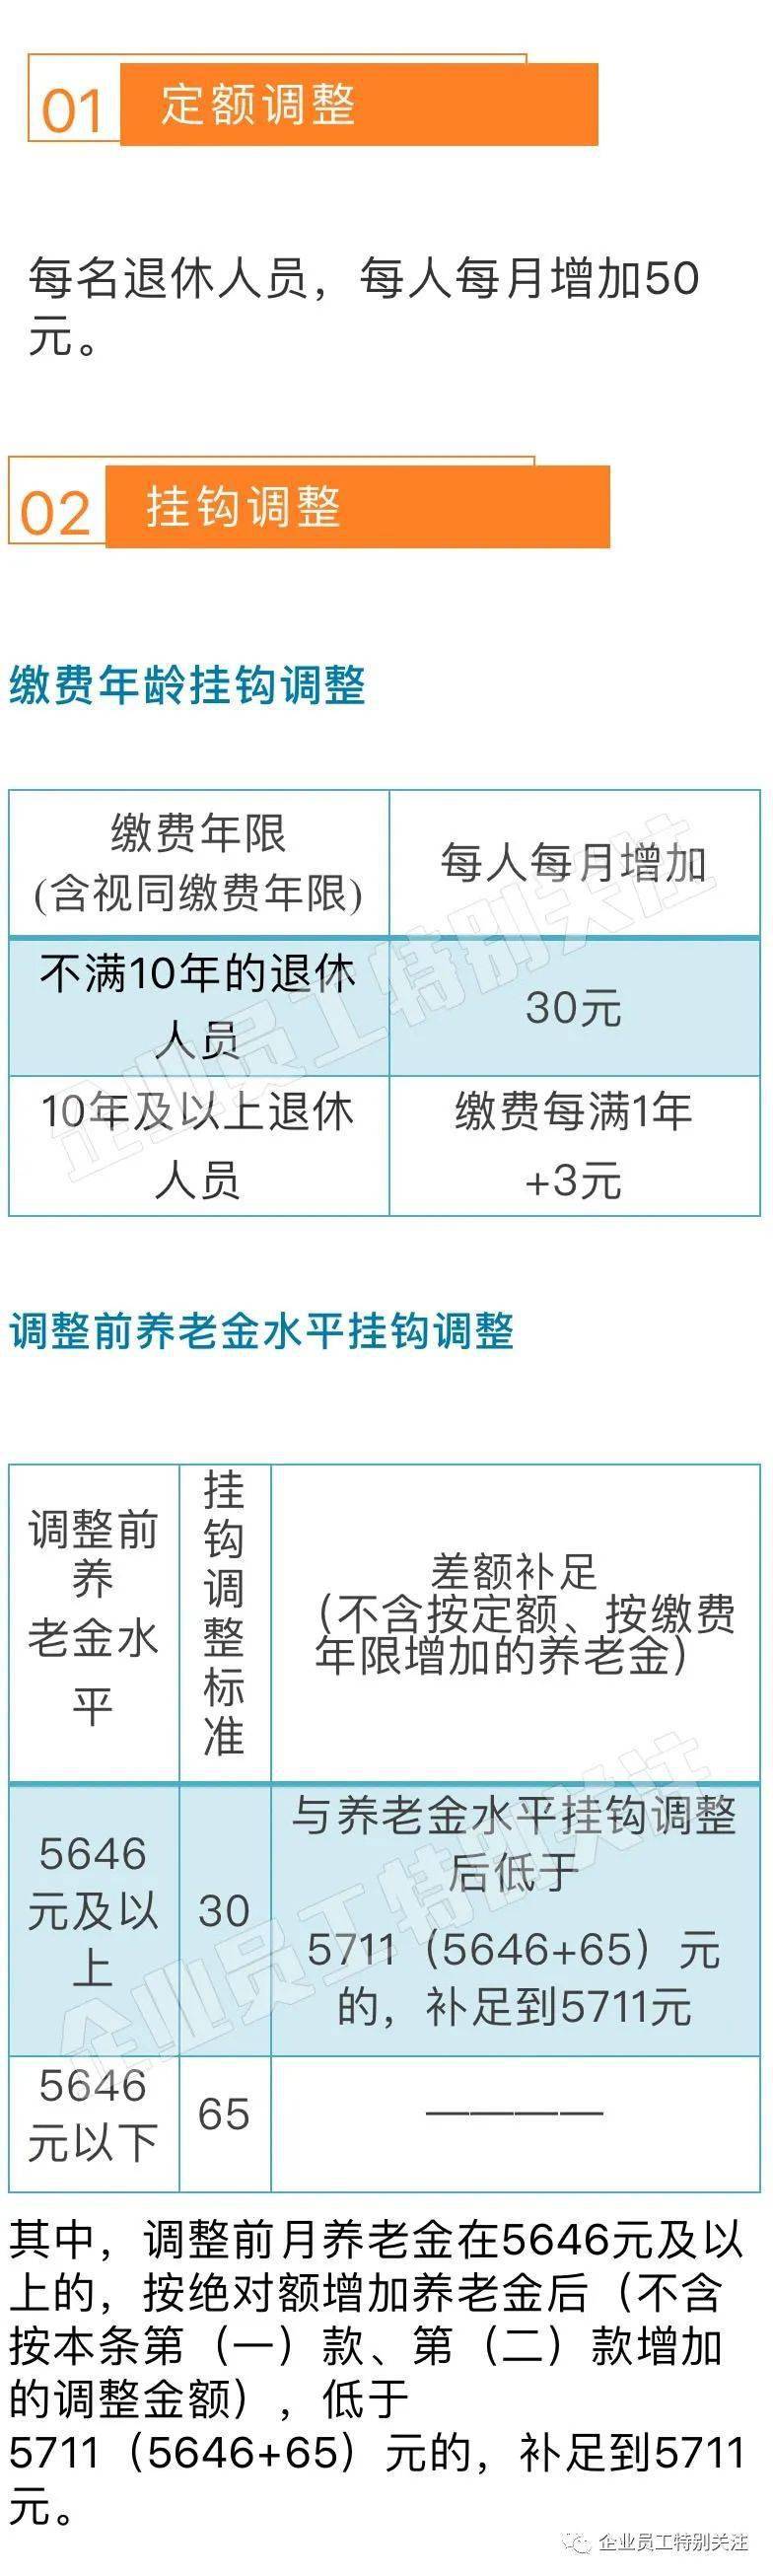 北京市2020年退休人员基本养老金调整方案,采取低者高调高者低调,保障